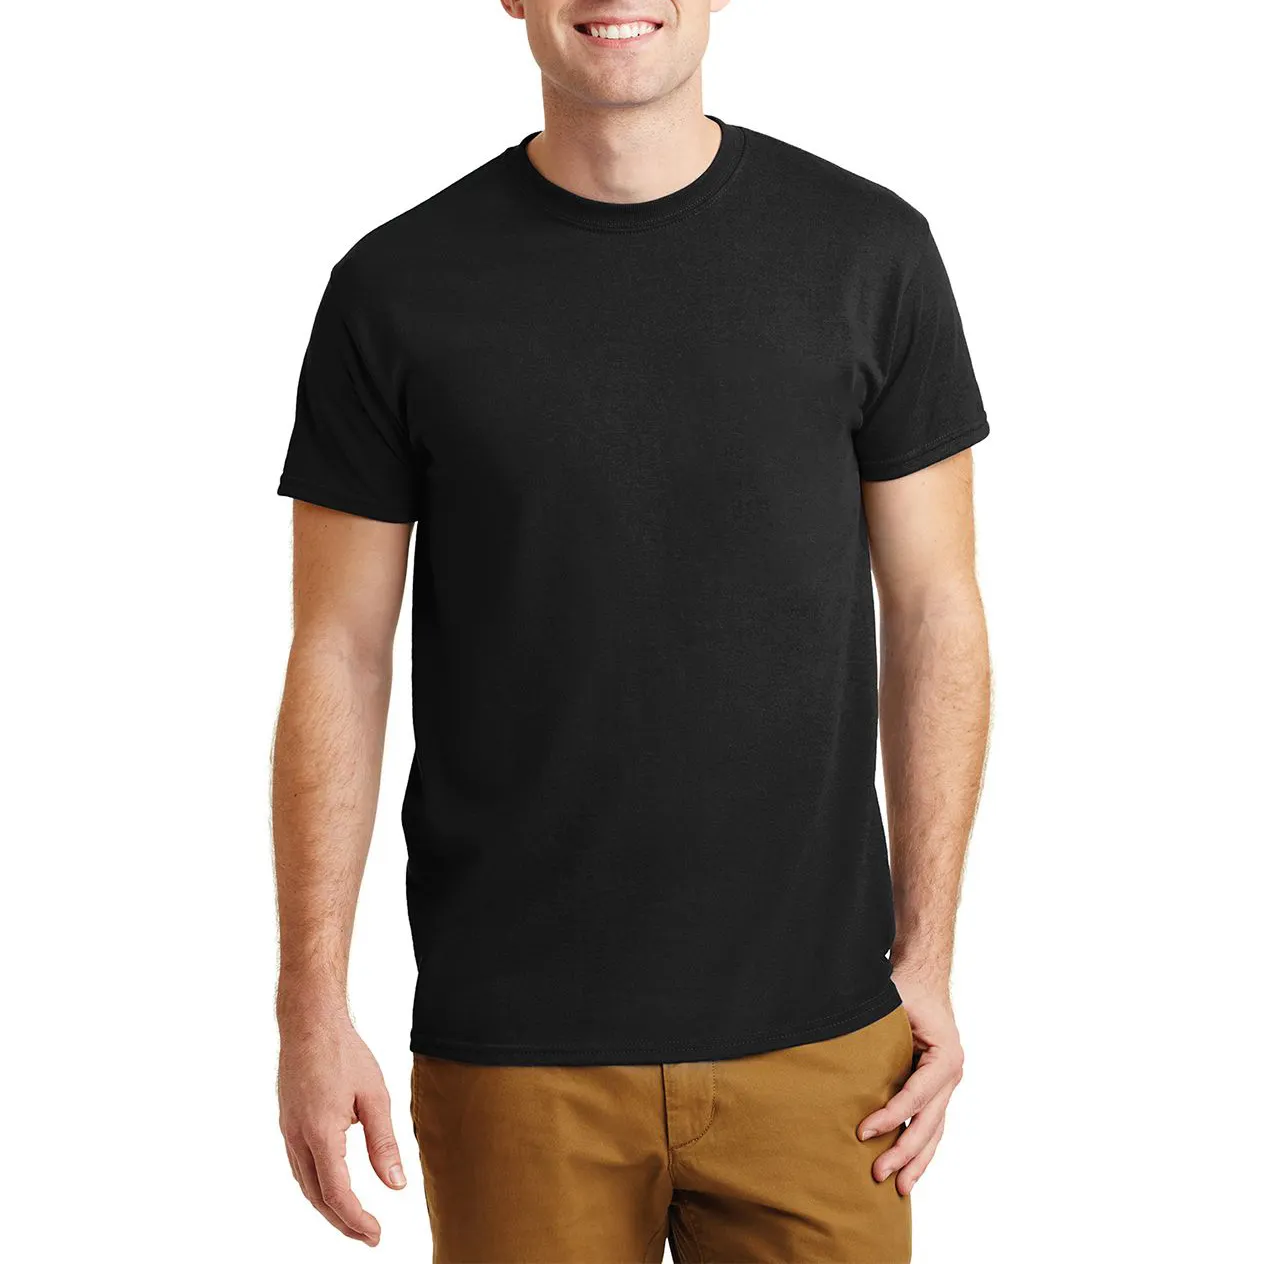 T-shirt pour homme Offre Spéciale coton, Logo personnalisé de bonne qualité, blanc, couleur unie, 100% gsm, livraison gratuite